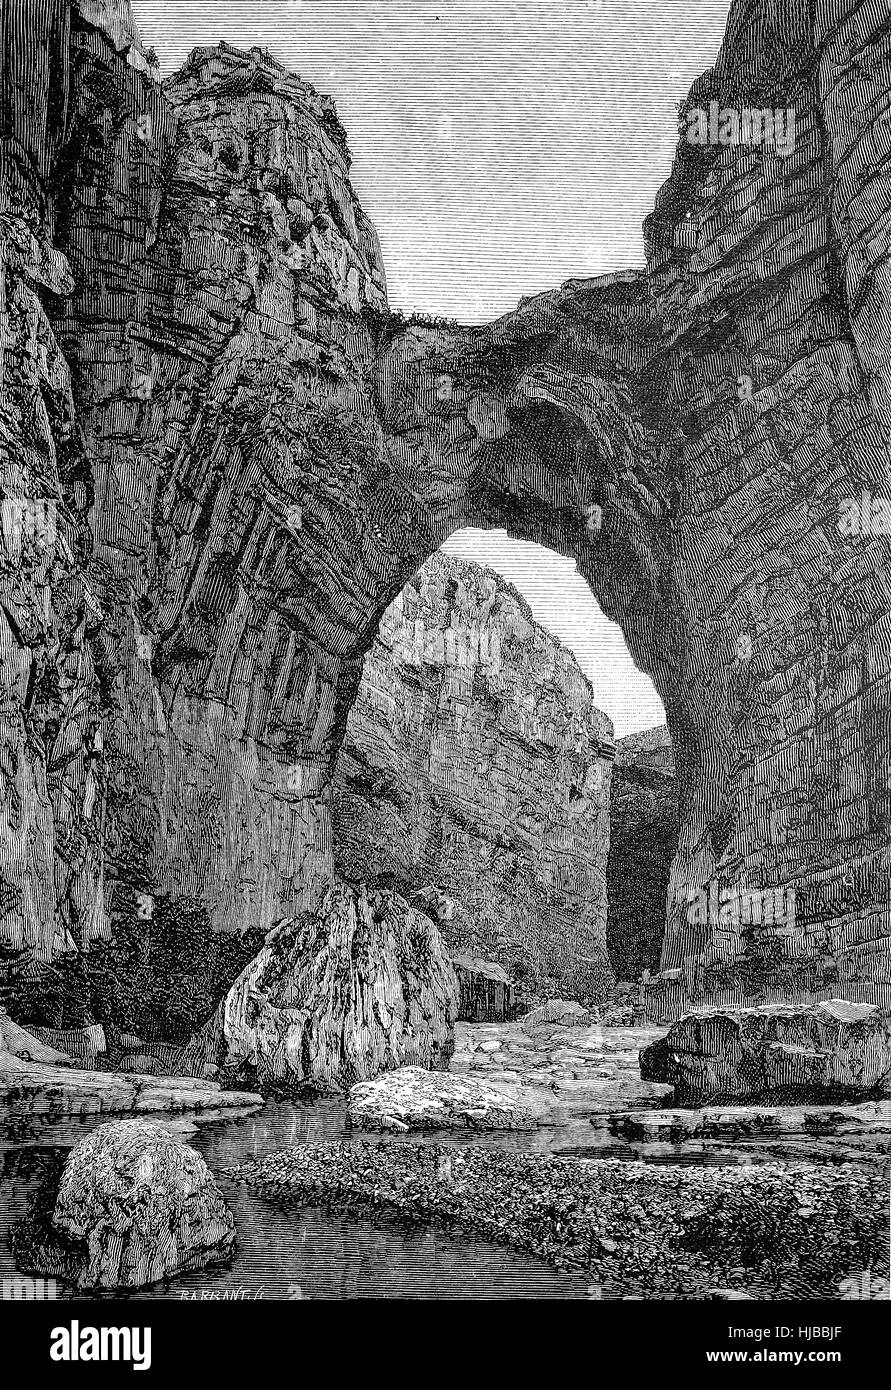 La roche pont de Constantine en Algérie dans le 19. siècle, l'image historique ou de l'illustration à partir de l'année 1894, l'amélioration numérique Banque D'Images